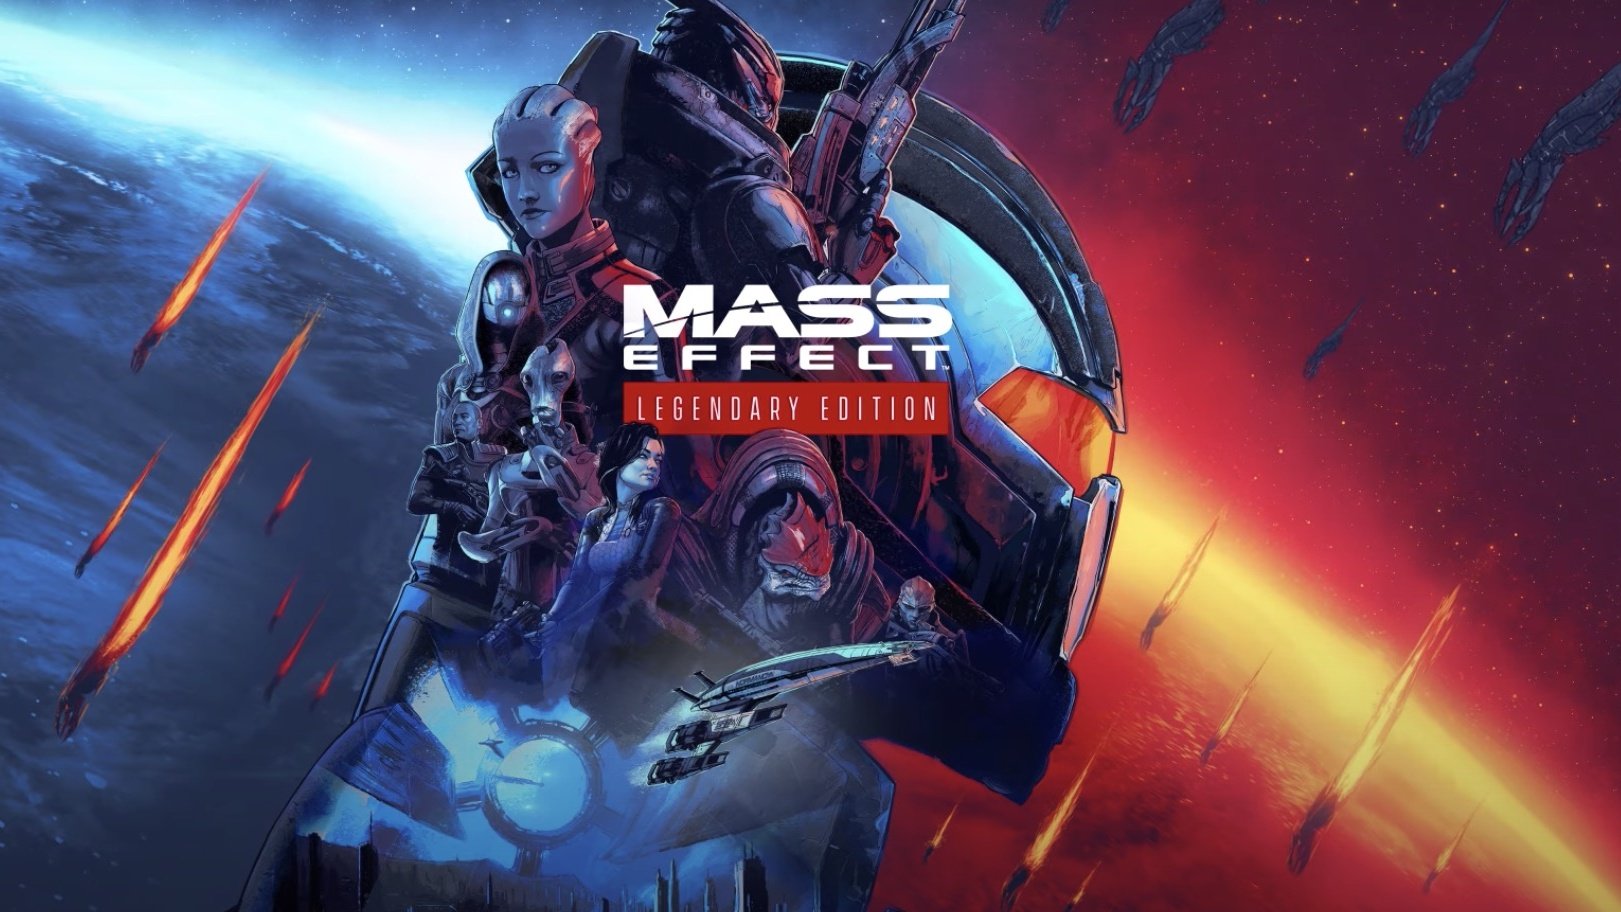 BioWare confirma que hay un nuevo juego Mass Effect en